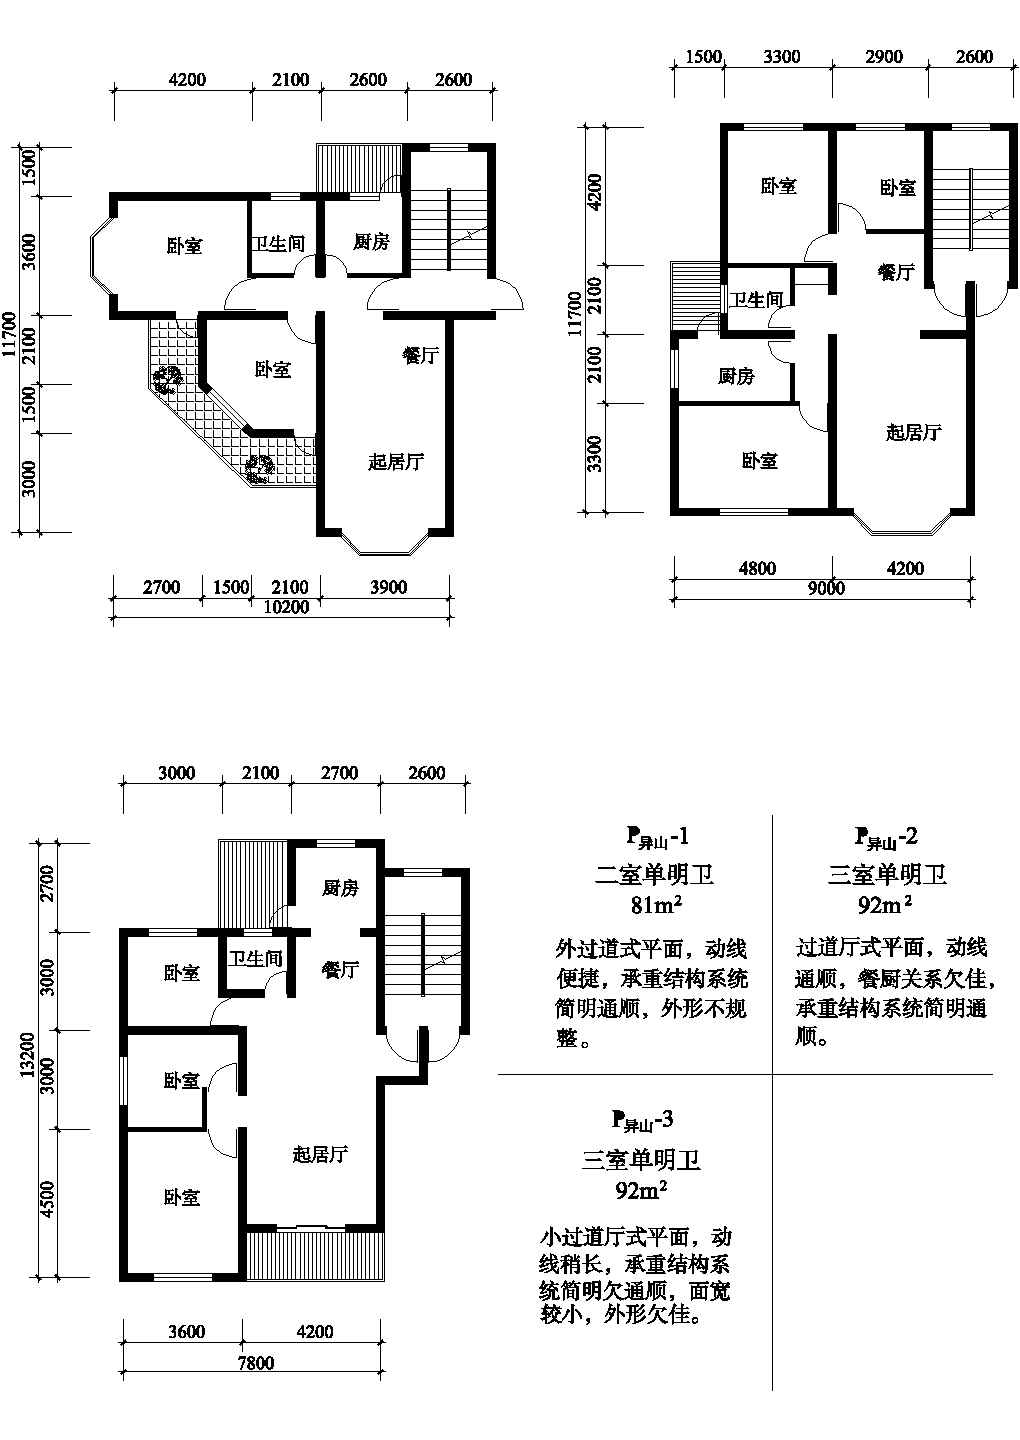 三室81/92平方单元式住宅户型平面图纸